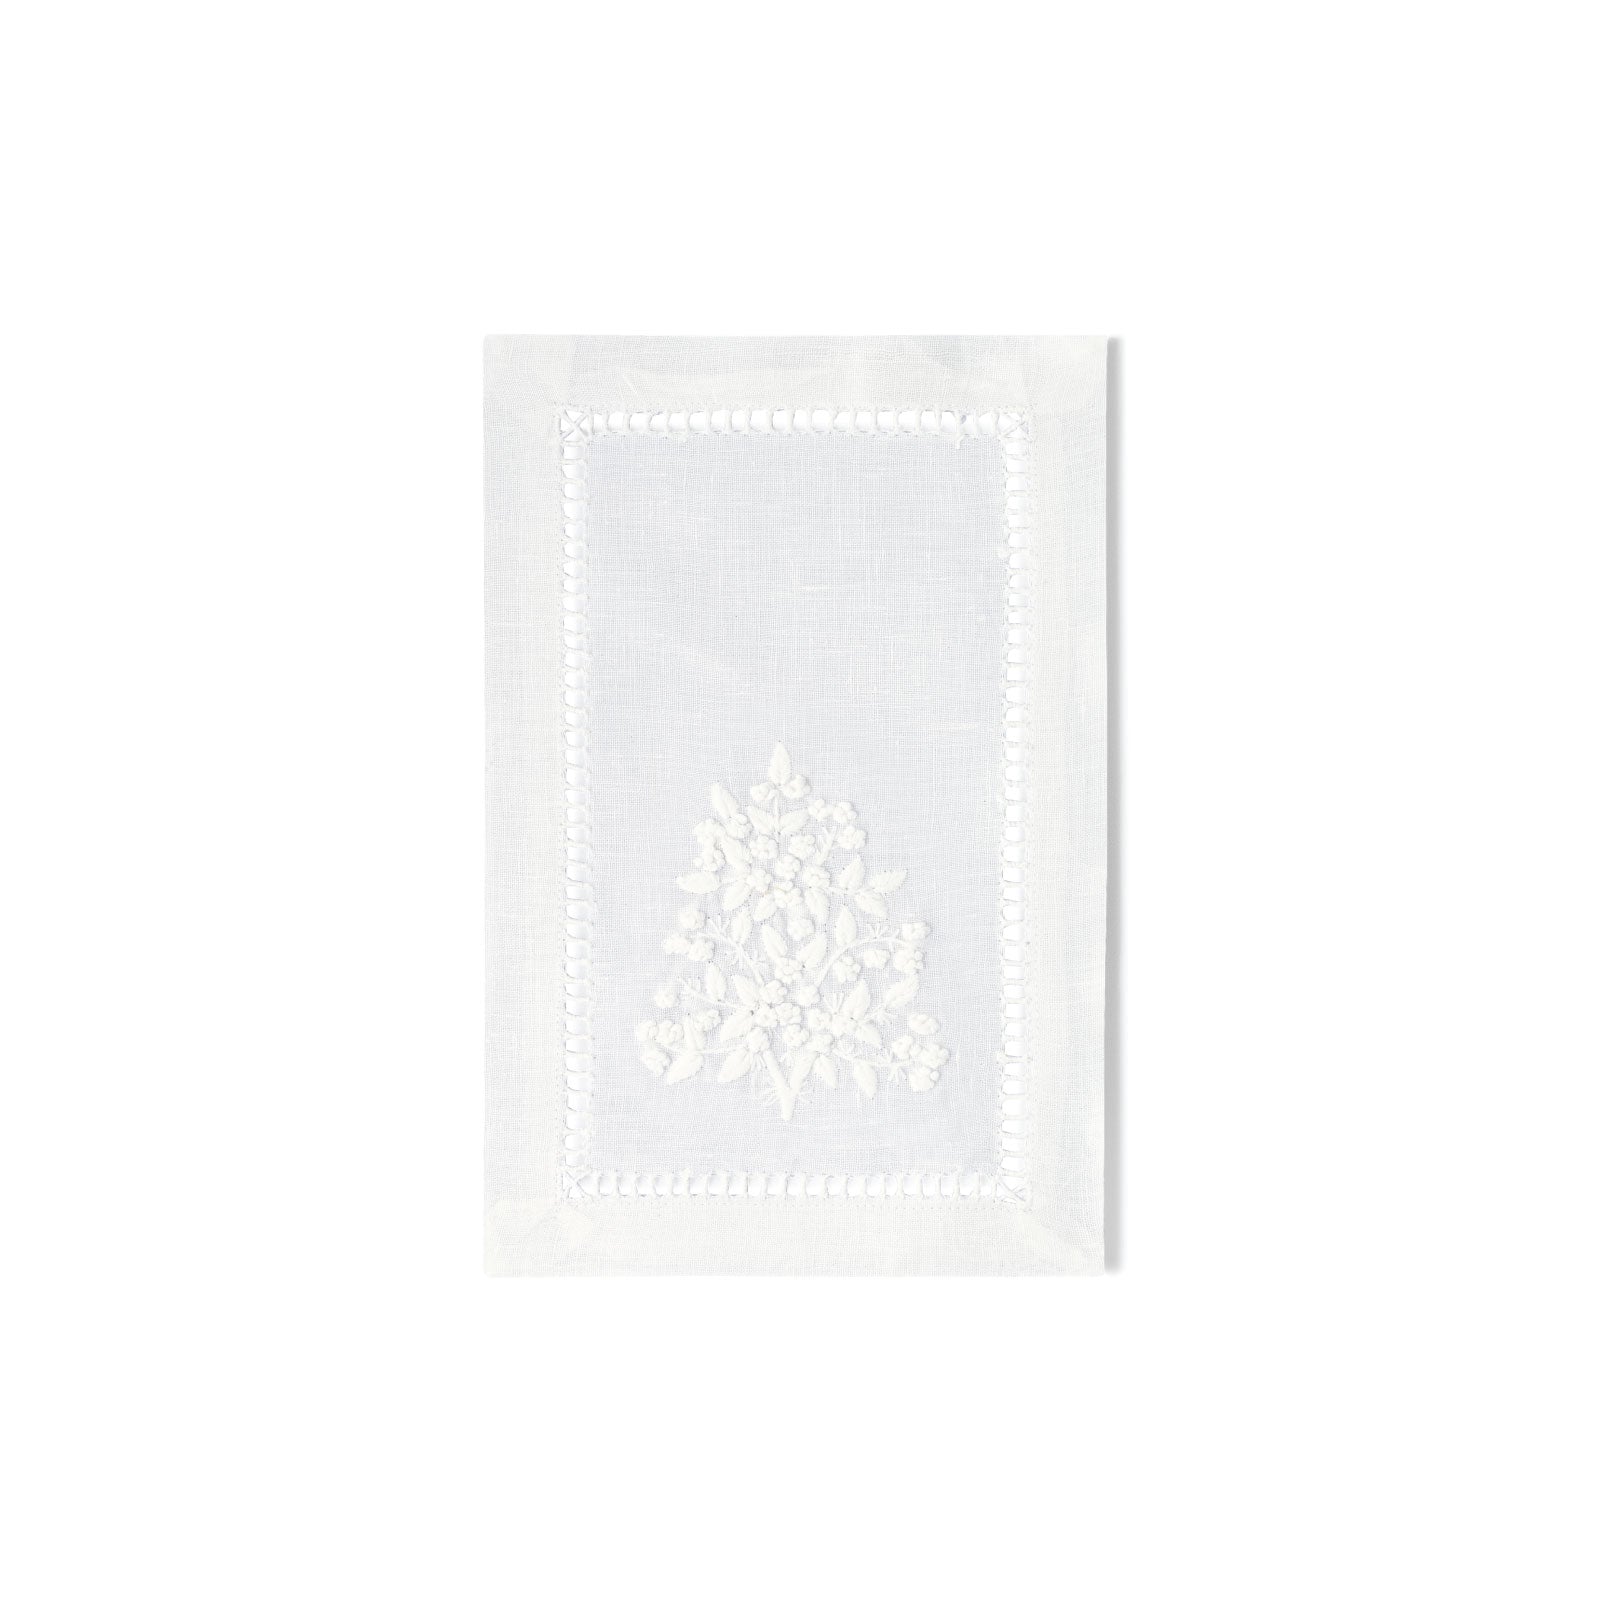 Tree of Life Appetizer Napkin in White